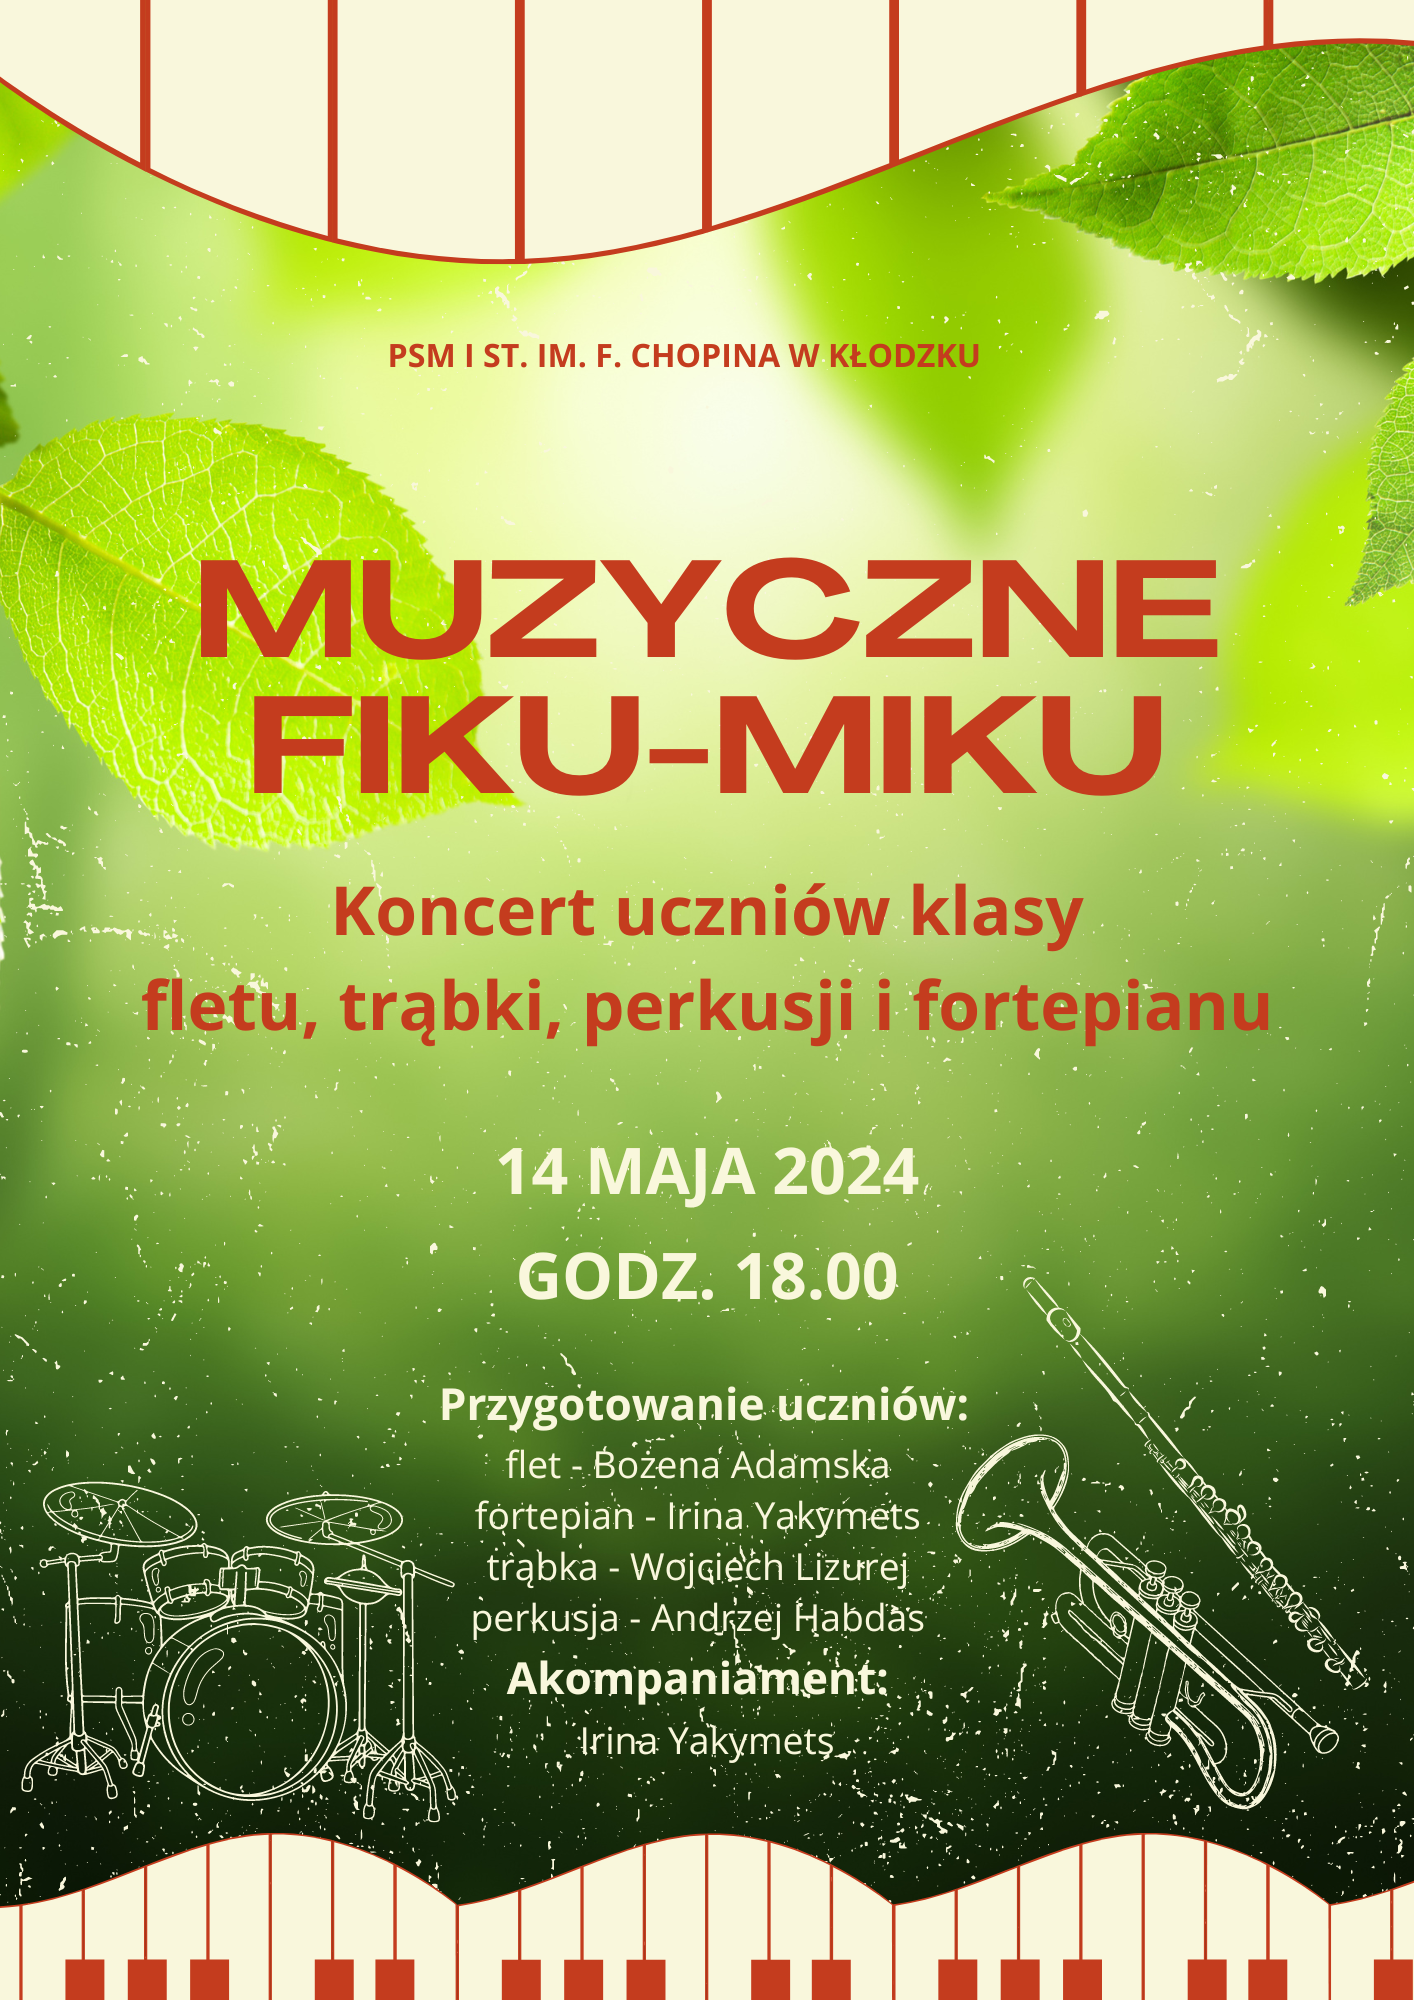 Plakat na zielonym tle z grafiką instrumentów oraz szczegółową informacją tekstową dotyczącą koncertu uczniów klasy fletu, trąbki, perkusji i fortepianu 14 maja 2024 